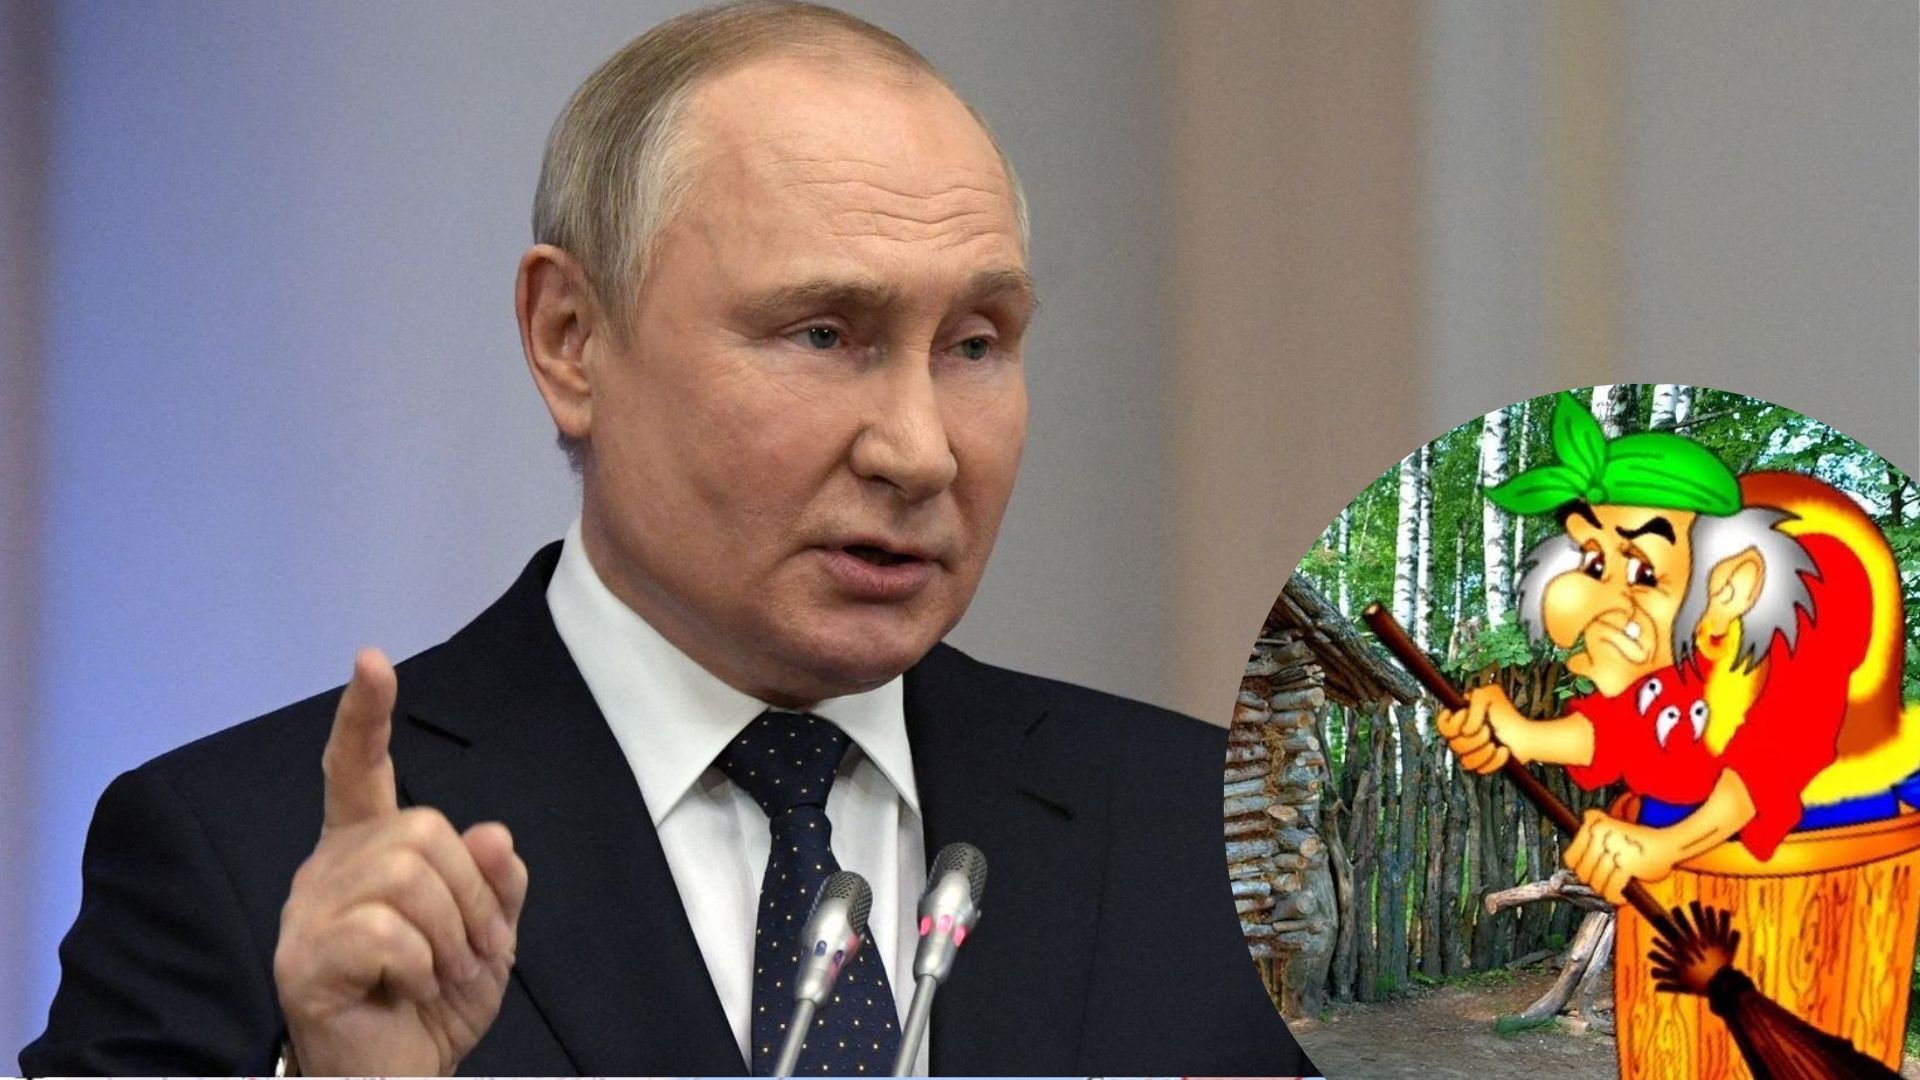 Пропаганда в России - Путин хочет пропагандировать героев фольколора